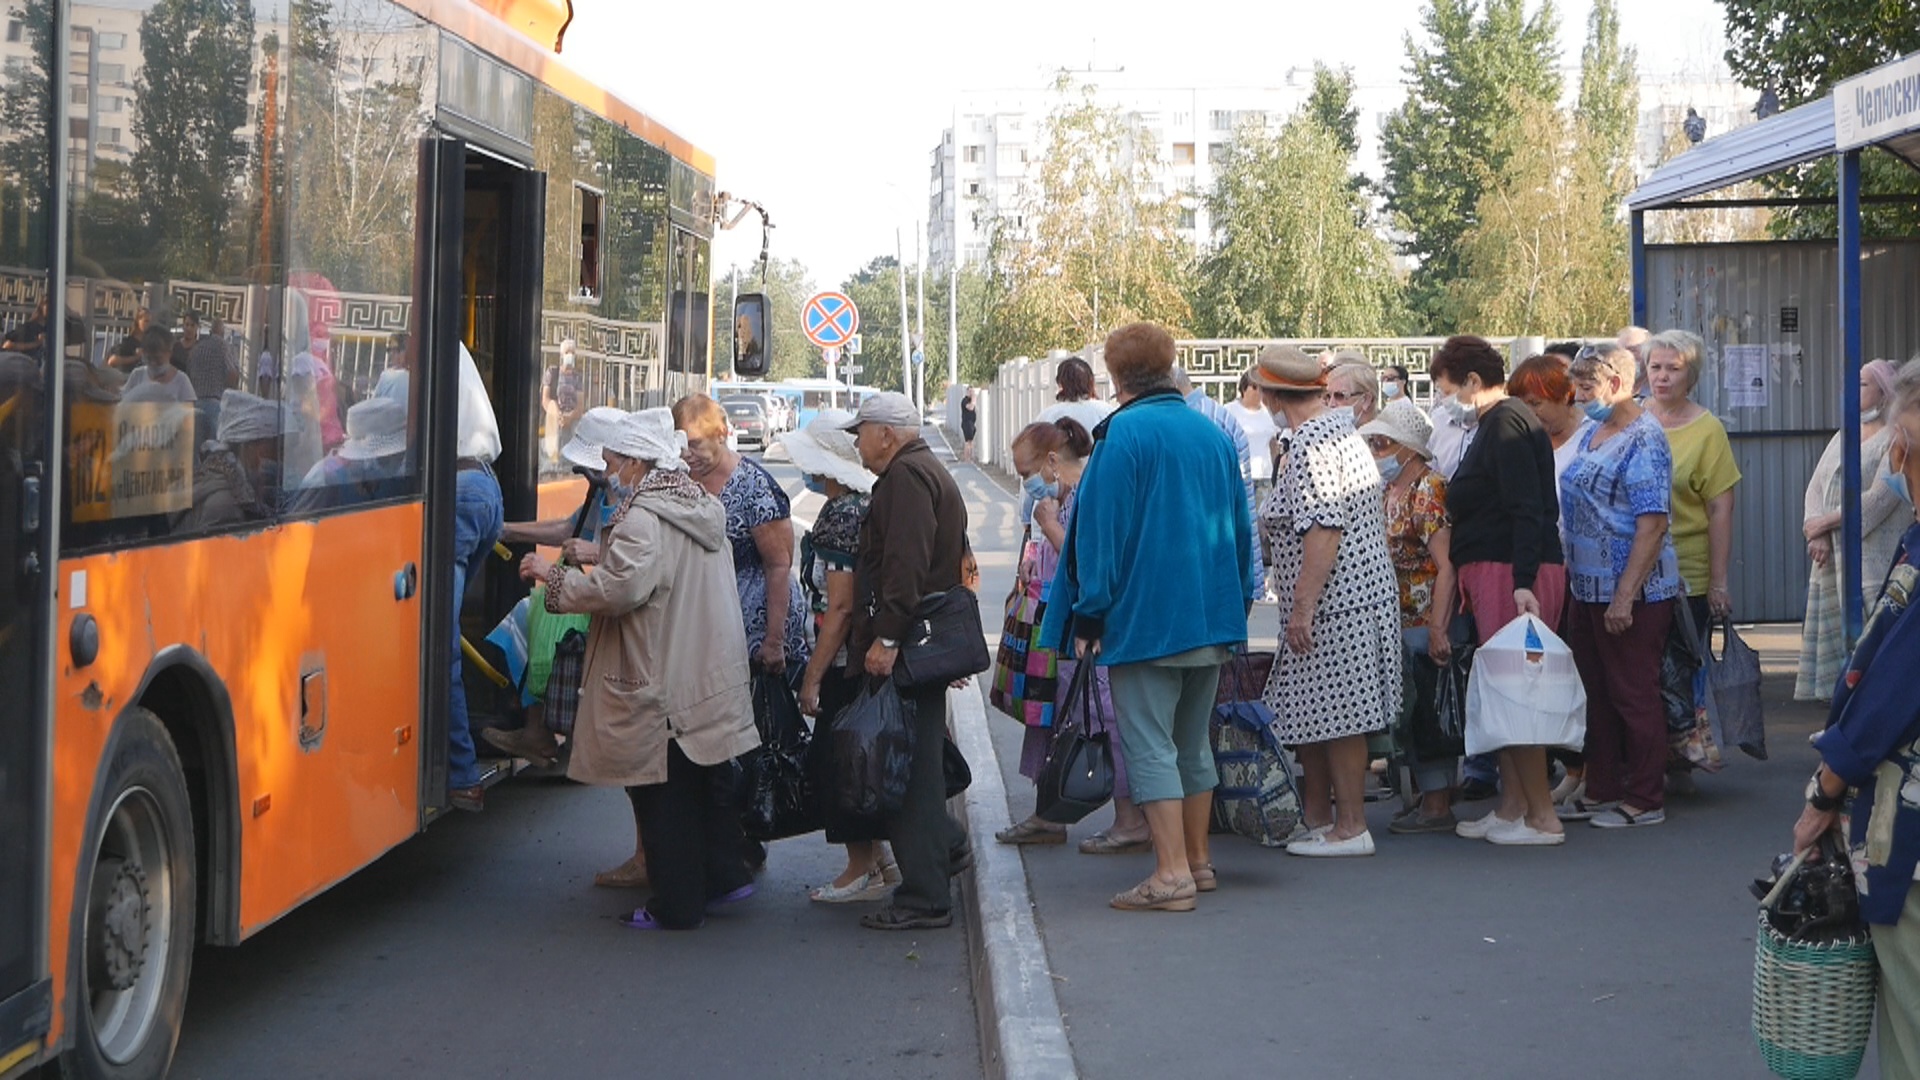 Дачники Оренбурга занимают очередь, чтобы попасть в автобус и не быть затоптанными толпой